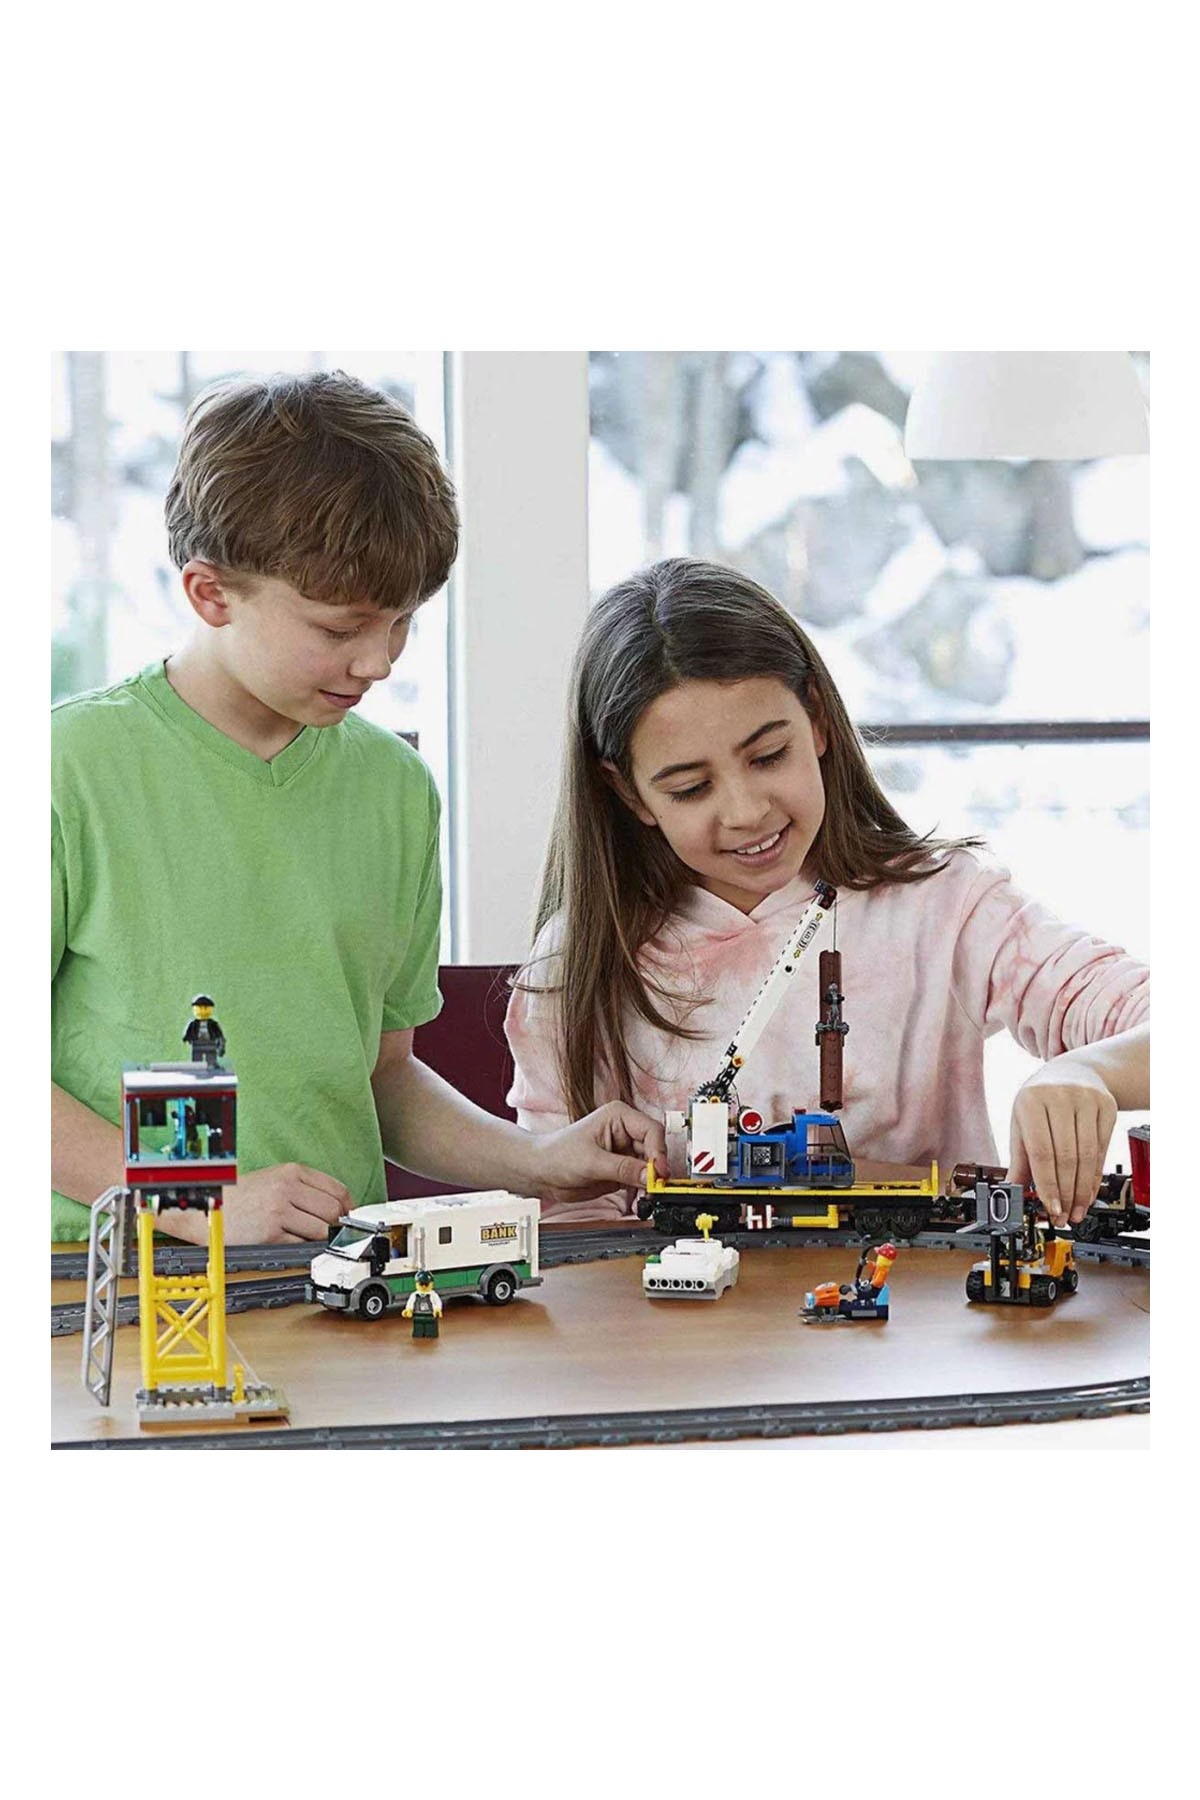 Lego City Kargo Treni 60198